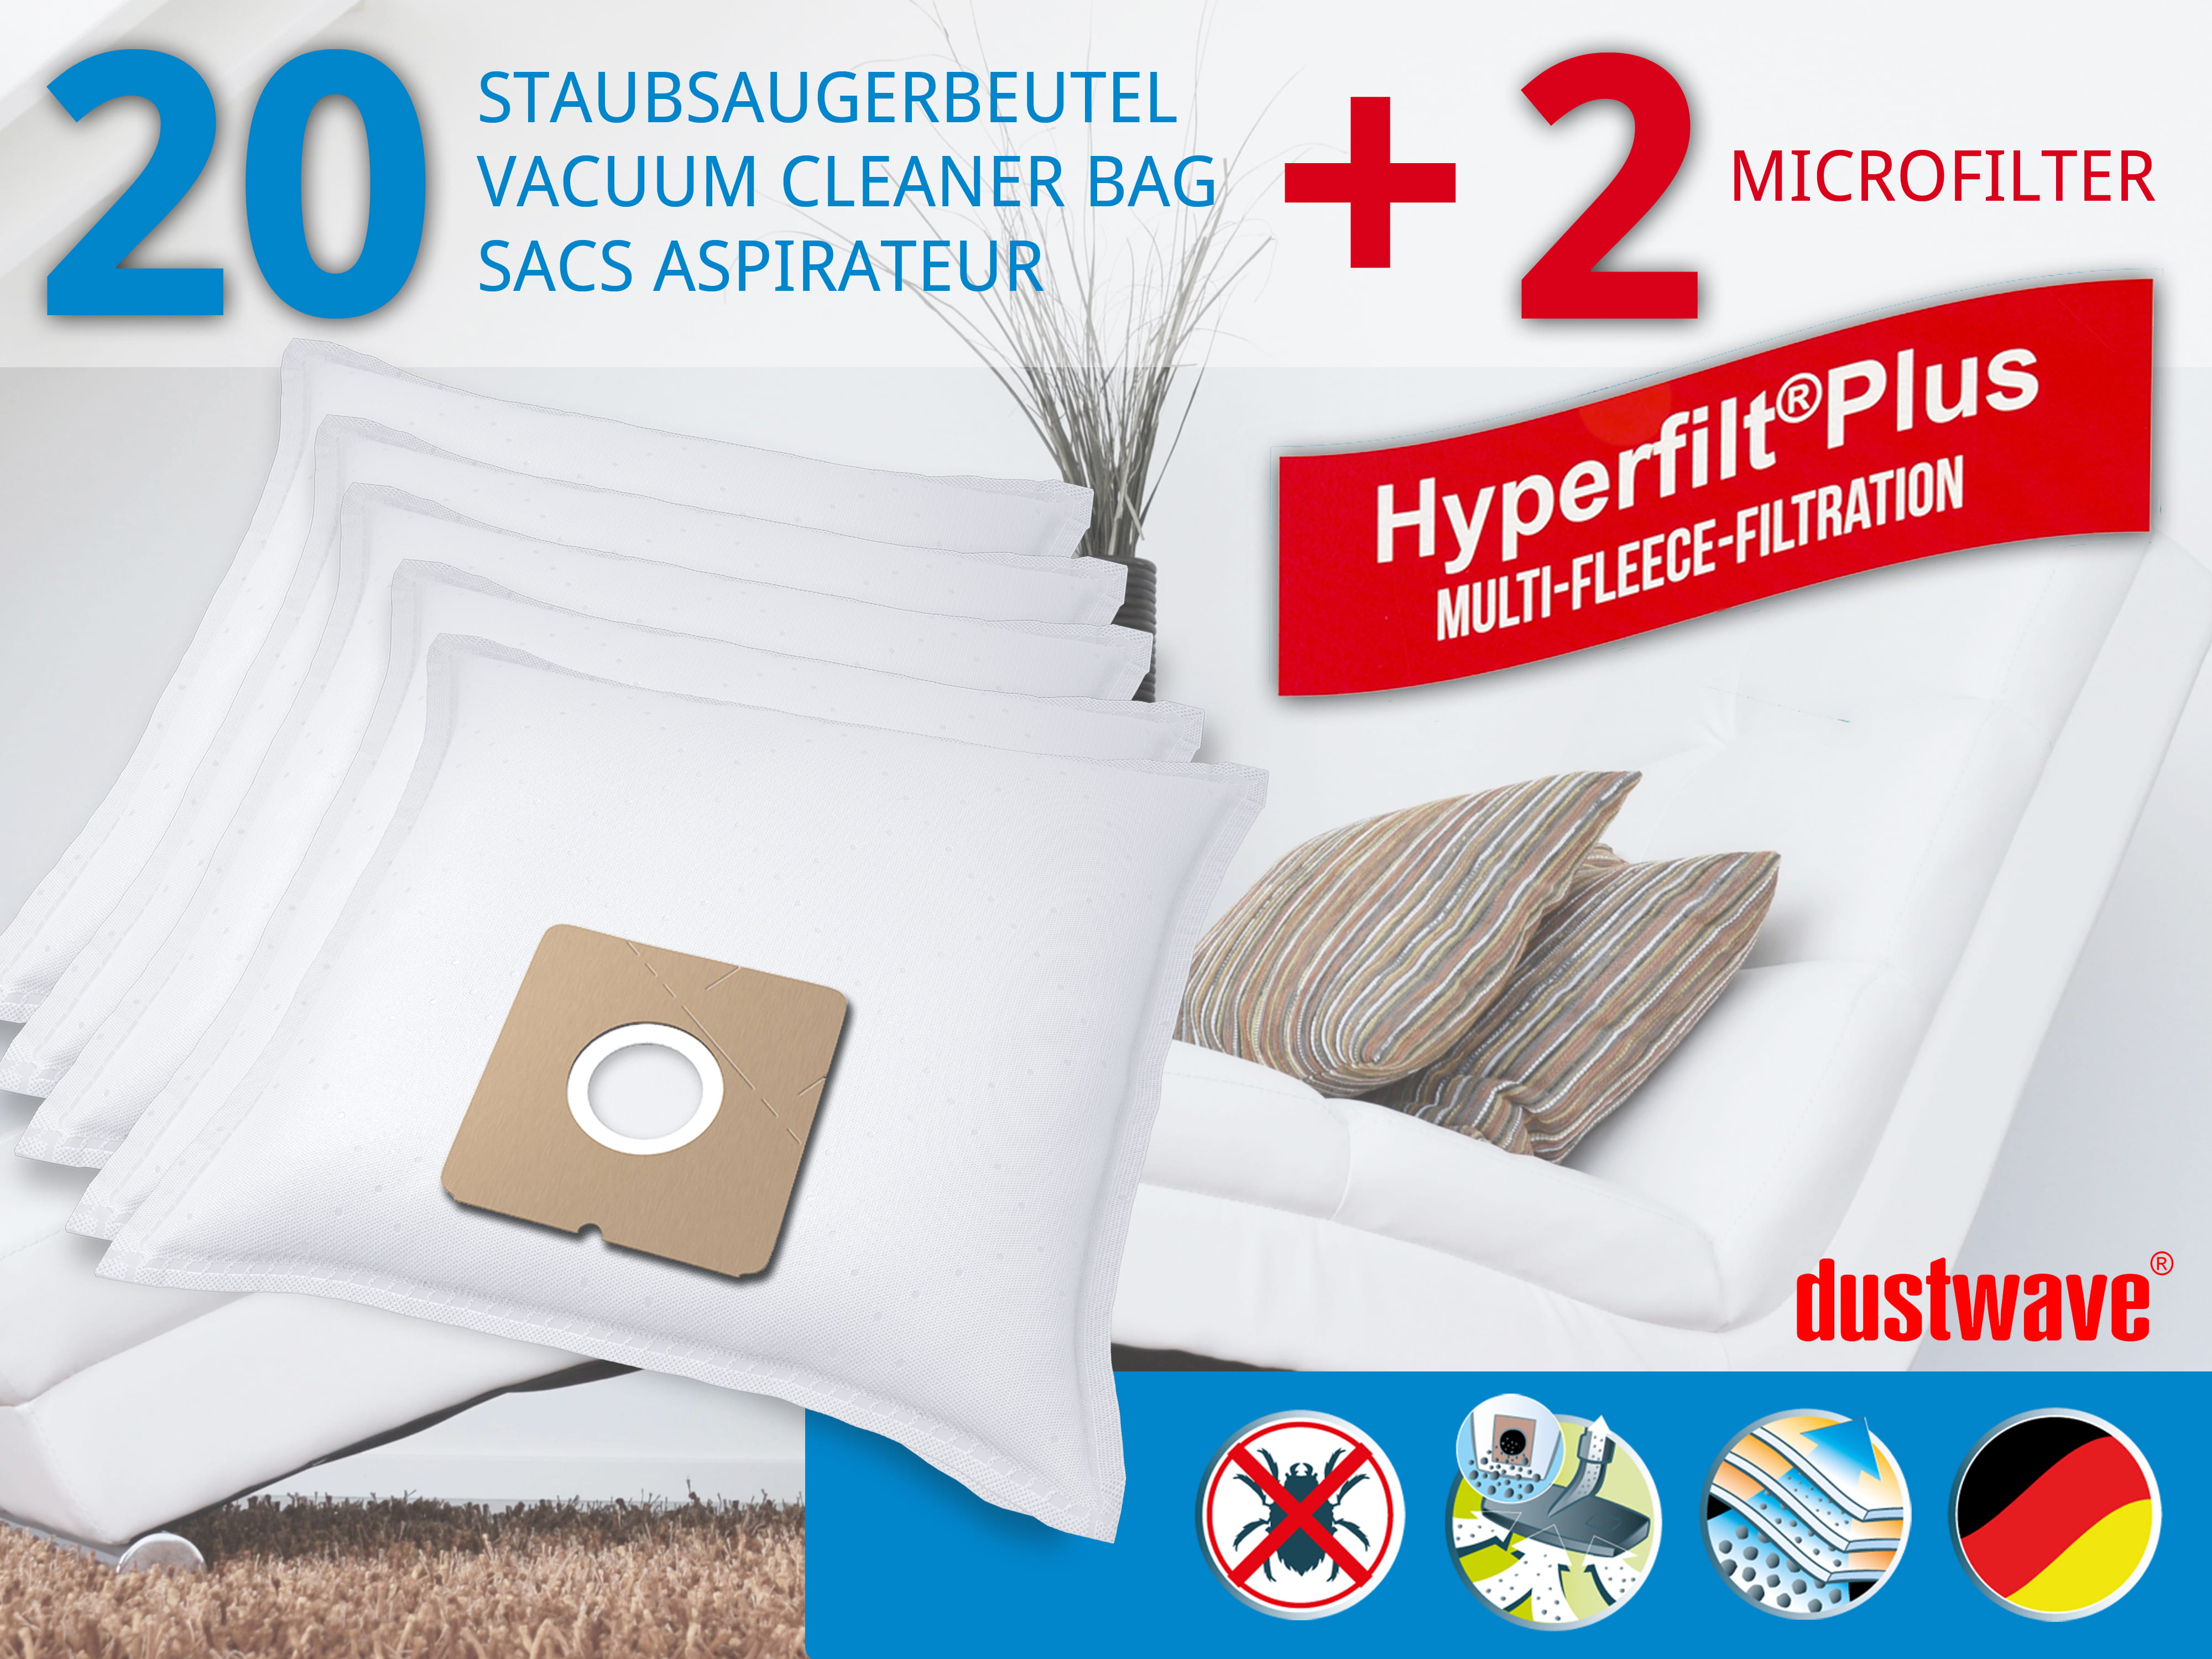 Dustwave® 20 Staubsaugerbeutel für Arc En Ciel - Boosty - hocheffizient, mehrlagiges Mikrovlies mit Hygieneverschluss - Made in Germany